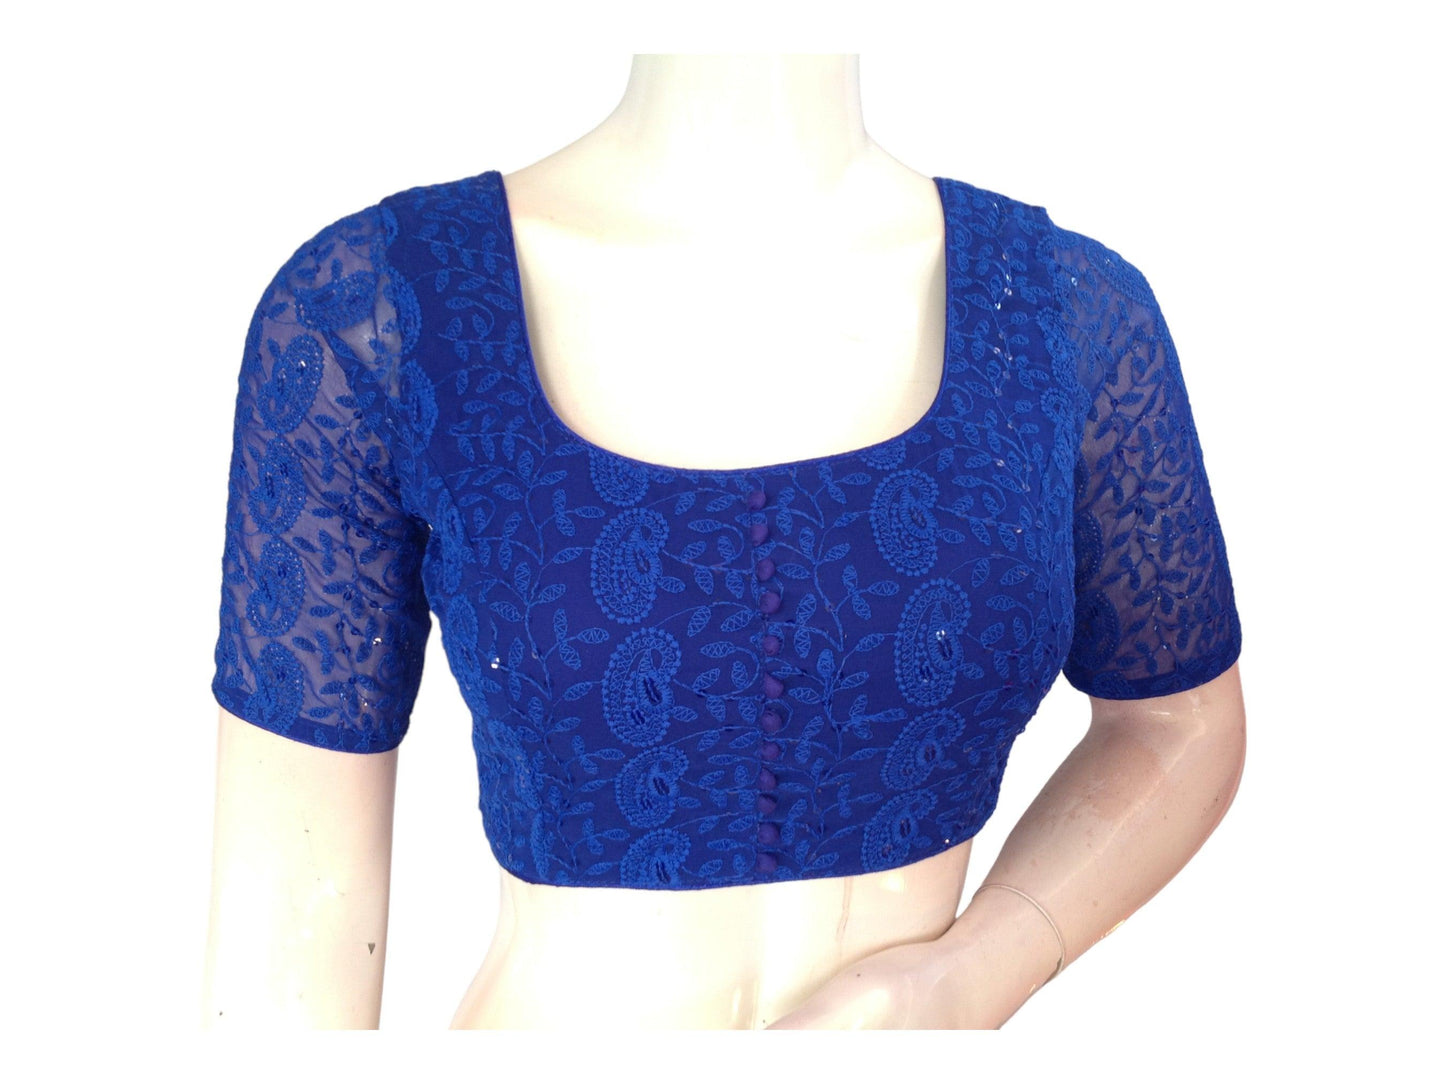 Blue Saree Blouse, Readymade Saree Blouse, Indian Choli Top, Chikankari Embroidered Saree Blouse